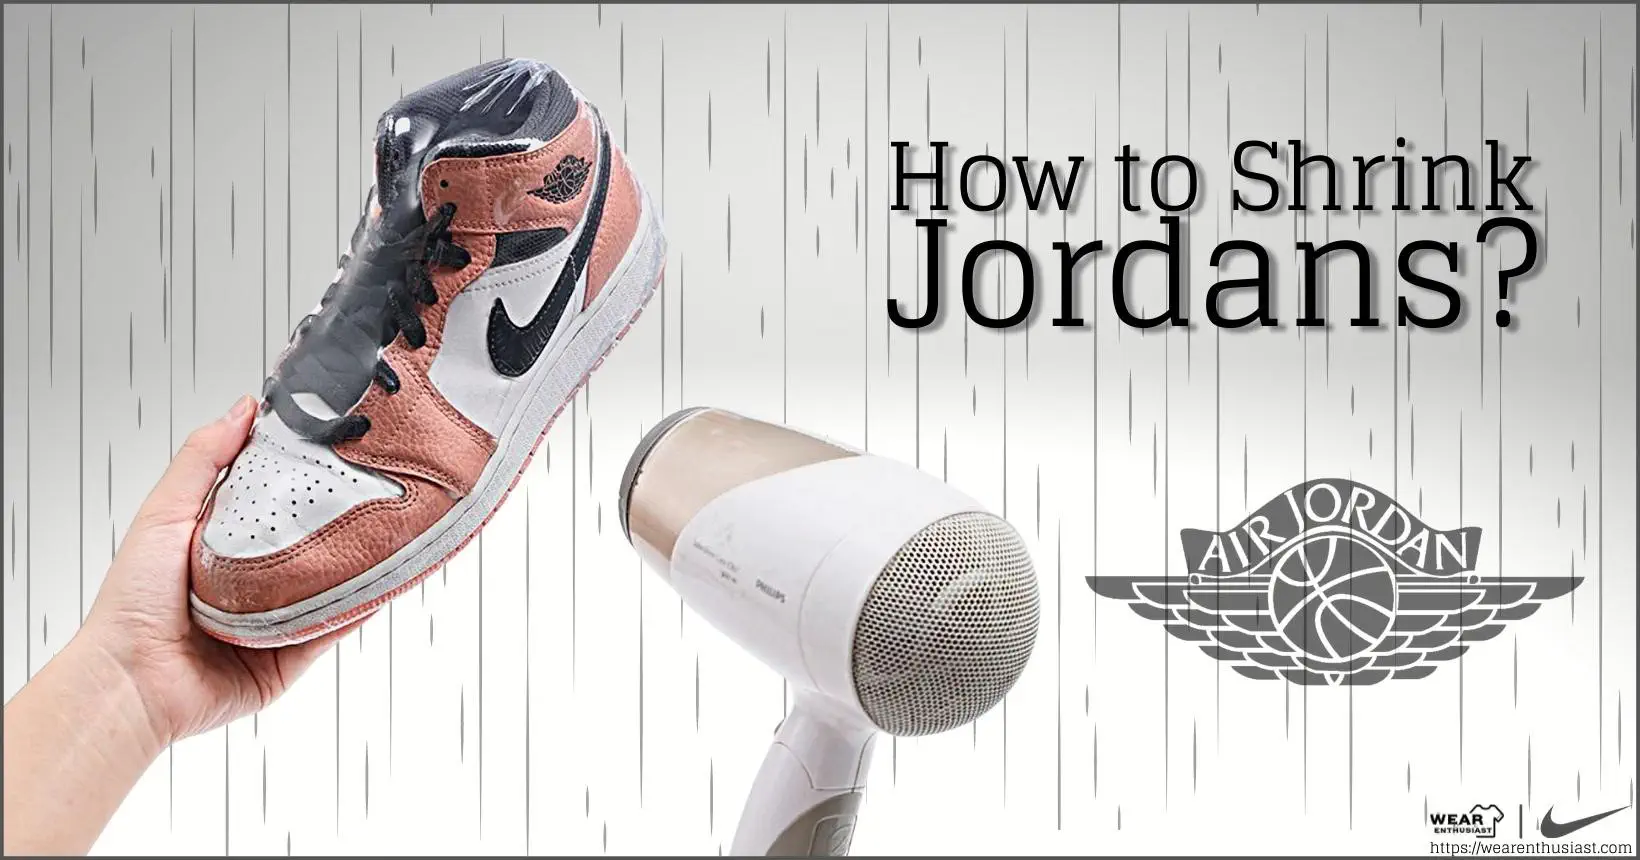 How to Shrink Jordans?